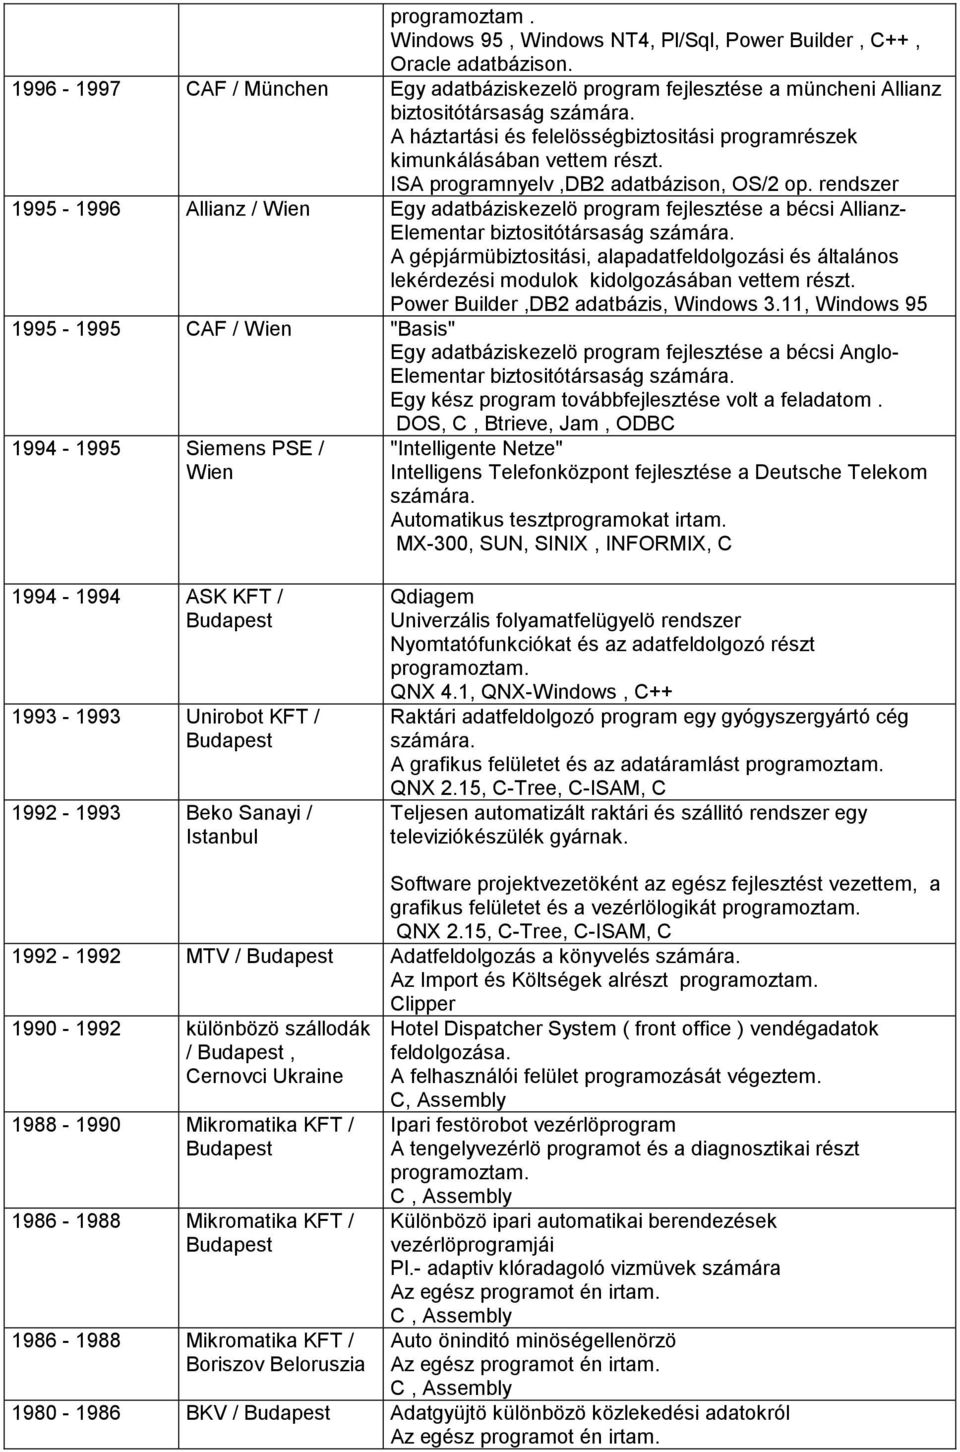 rendszer 1995-1996 Allianz / Wien Egy adatbáziskezelö program fejlesztése a bécsi Allianz- Elementar biztositótársaság számára.